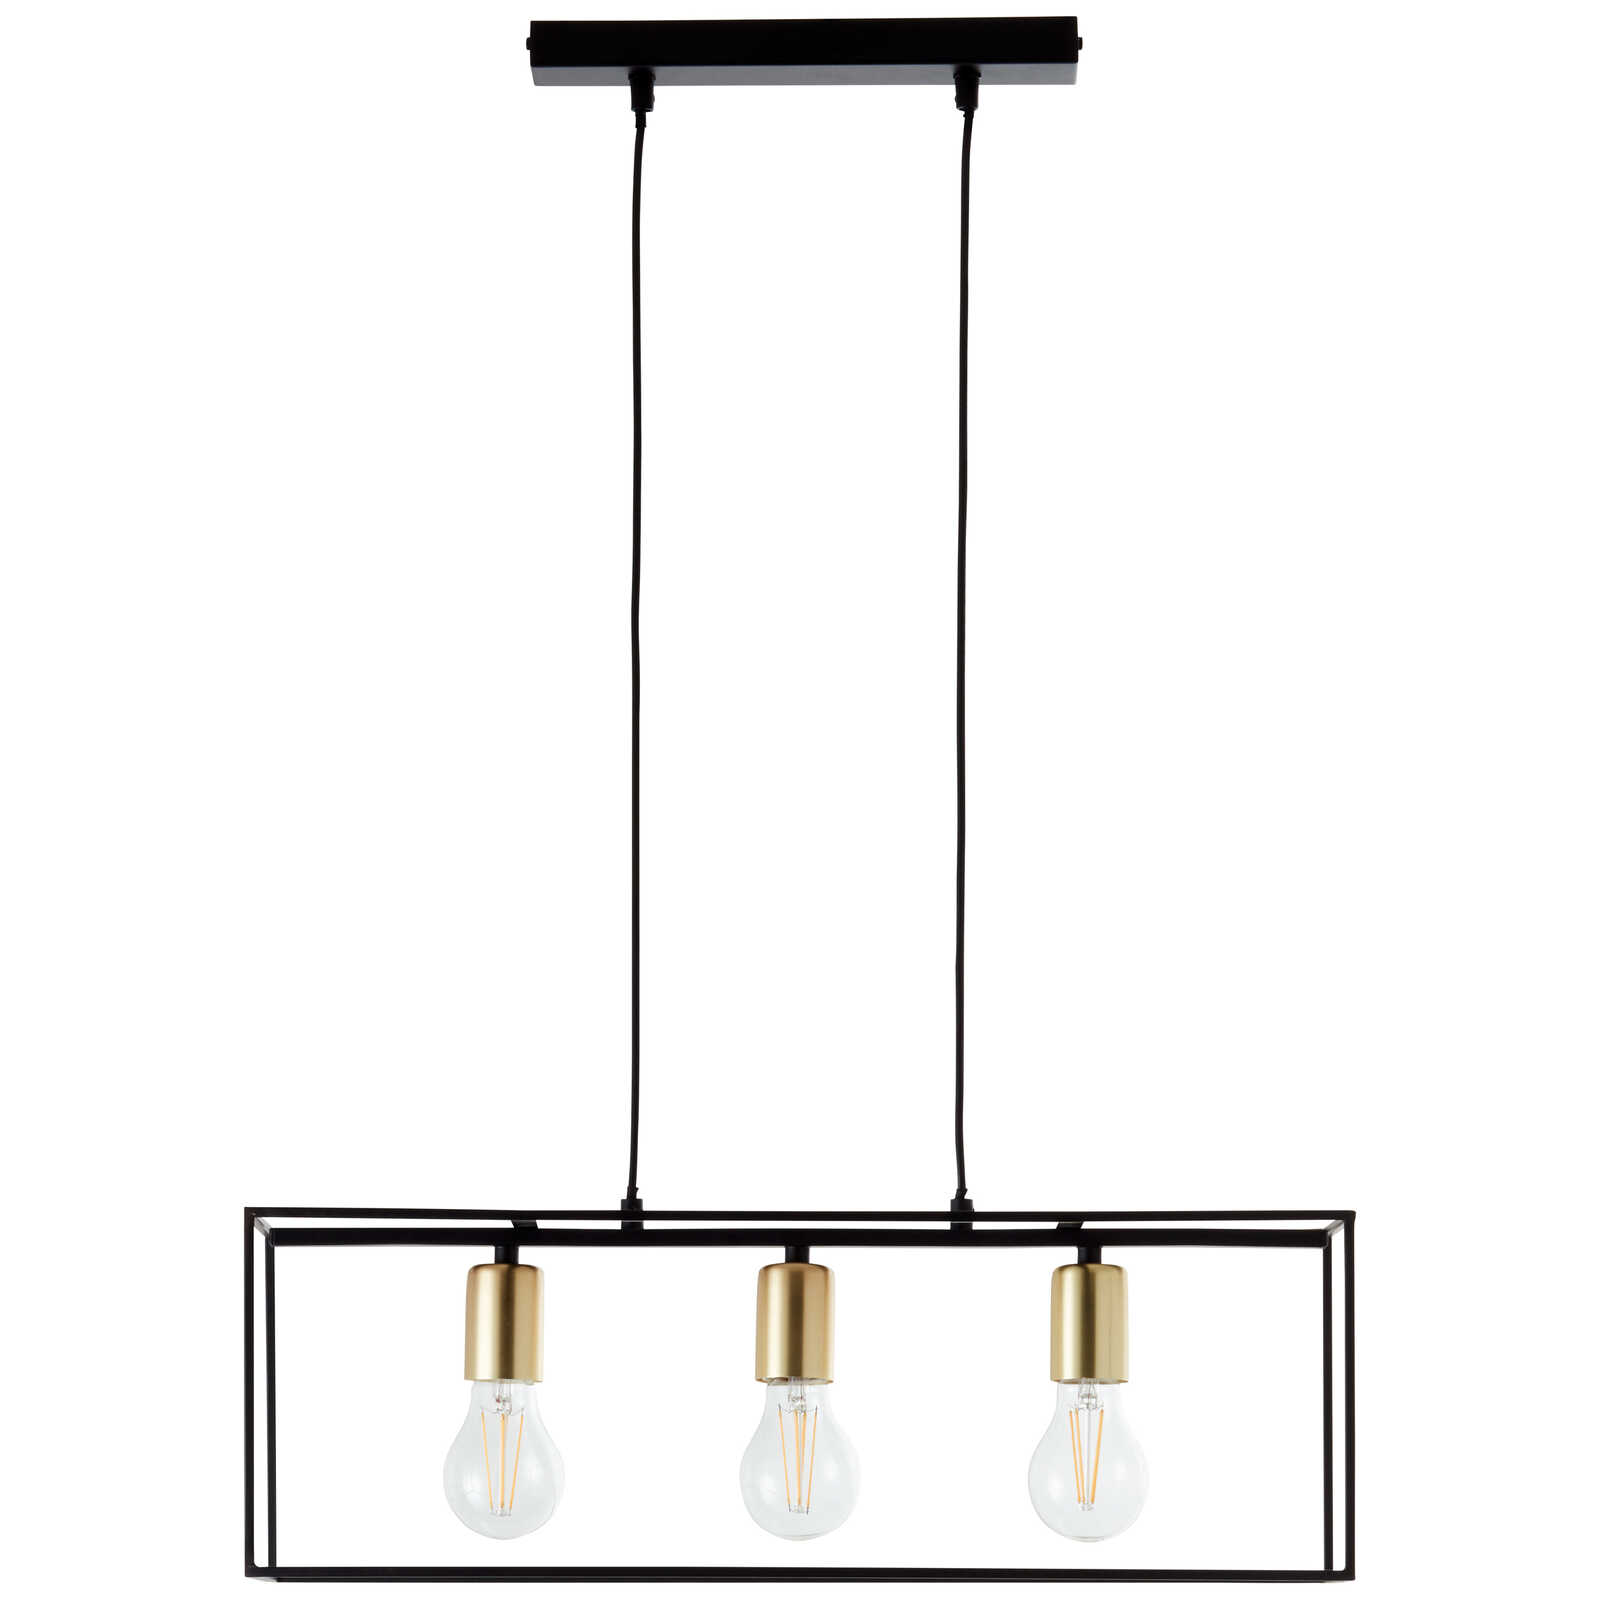             Metalen hanglamp - Amber 1 - Goud
        